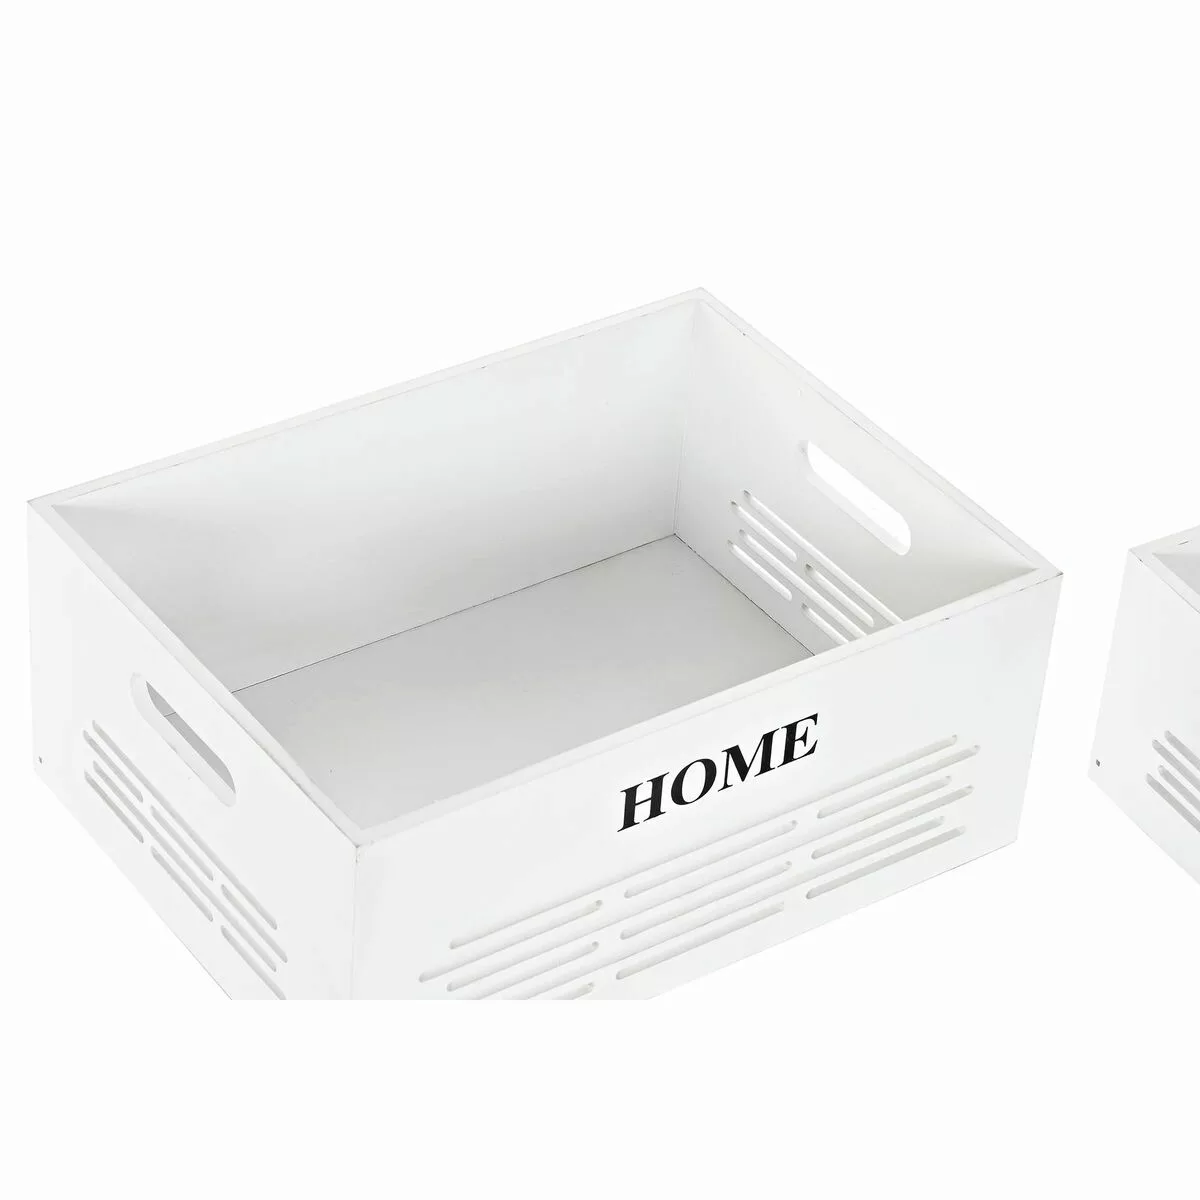 Korbsatz Dkd Home Decor Weiß Polyester Mdf (40 X 30 X 56 Cm) (5 Stücke) günstig online kaufen